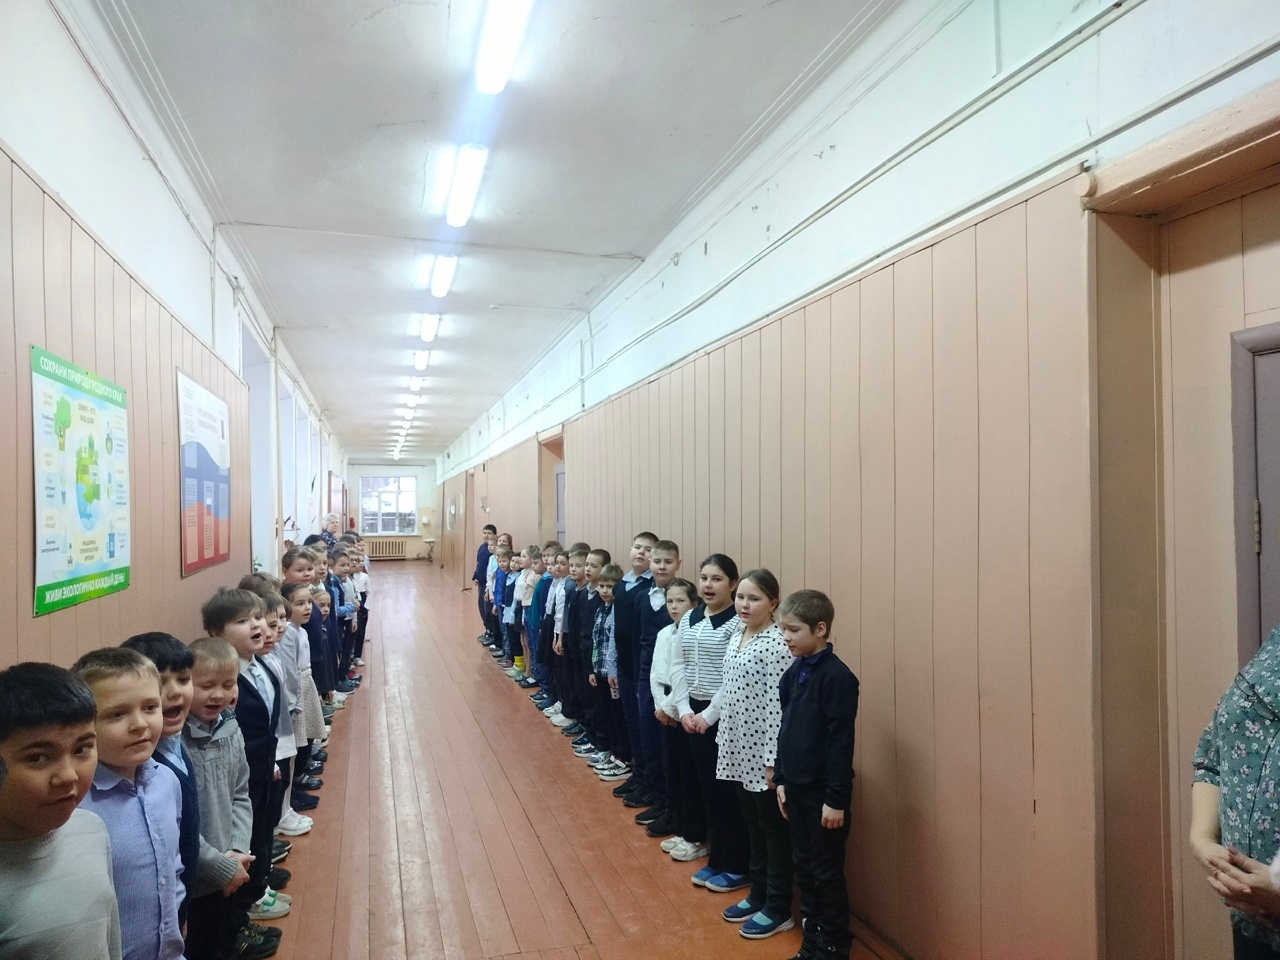 12 февраля в школе прошла еженедельная линейка, которая началась с выноса государственного флага Российской Федерации и исполнения гимна.